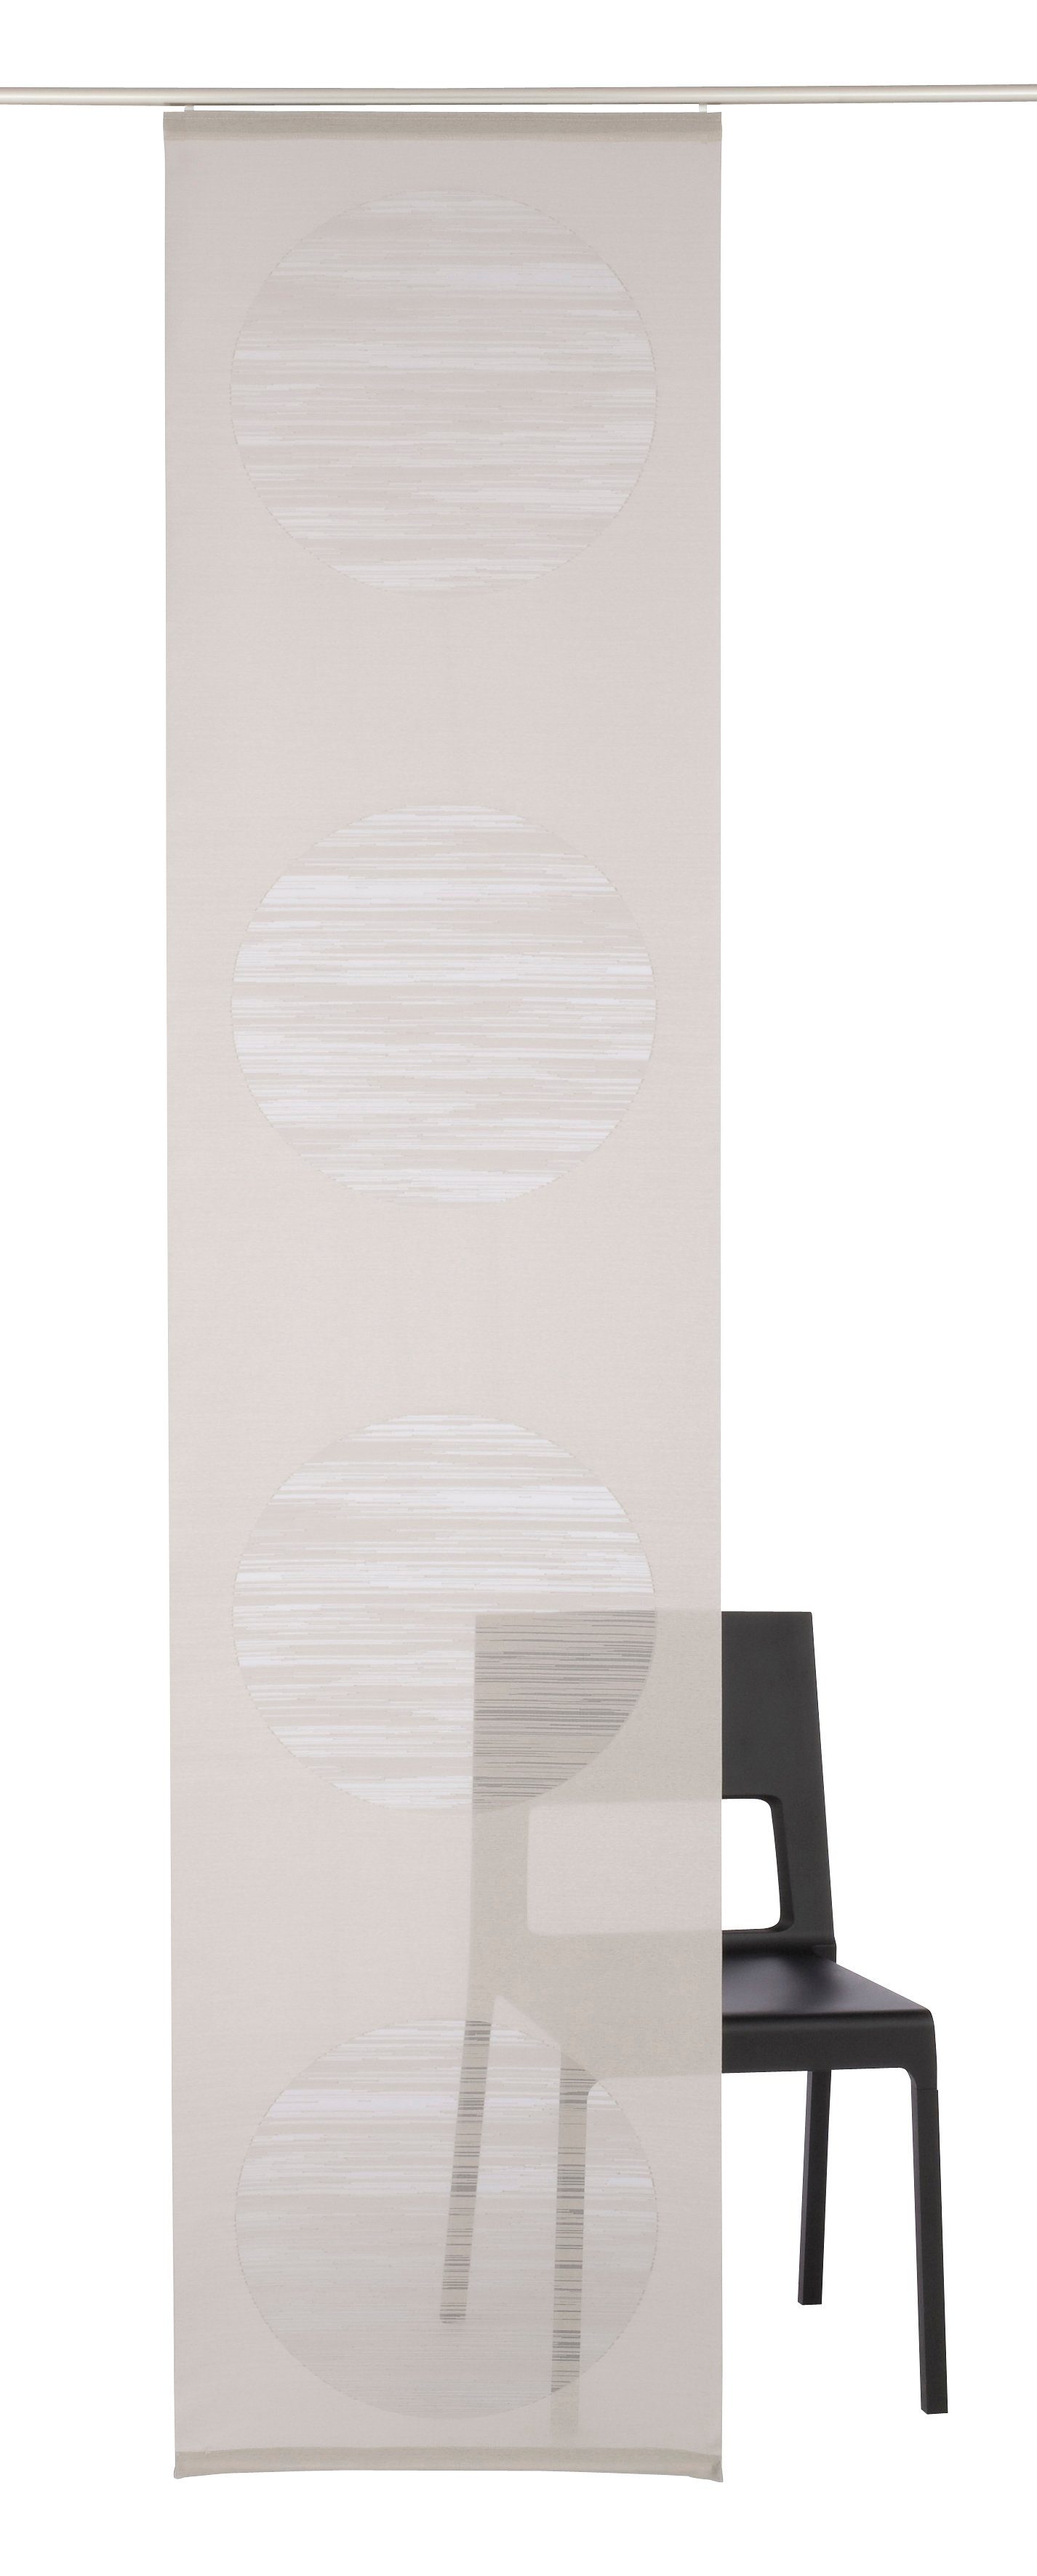 Neutex for you! Paneelgordijn Padova inclusief bevestigingsmateriaal, breedte: 57 cm (1 stuk)